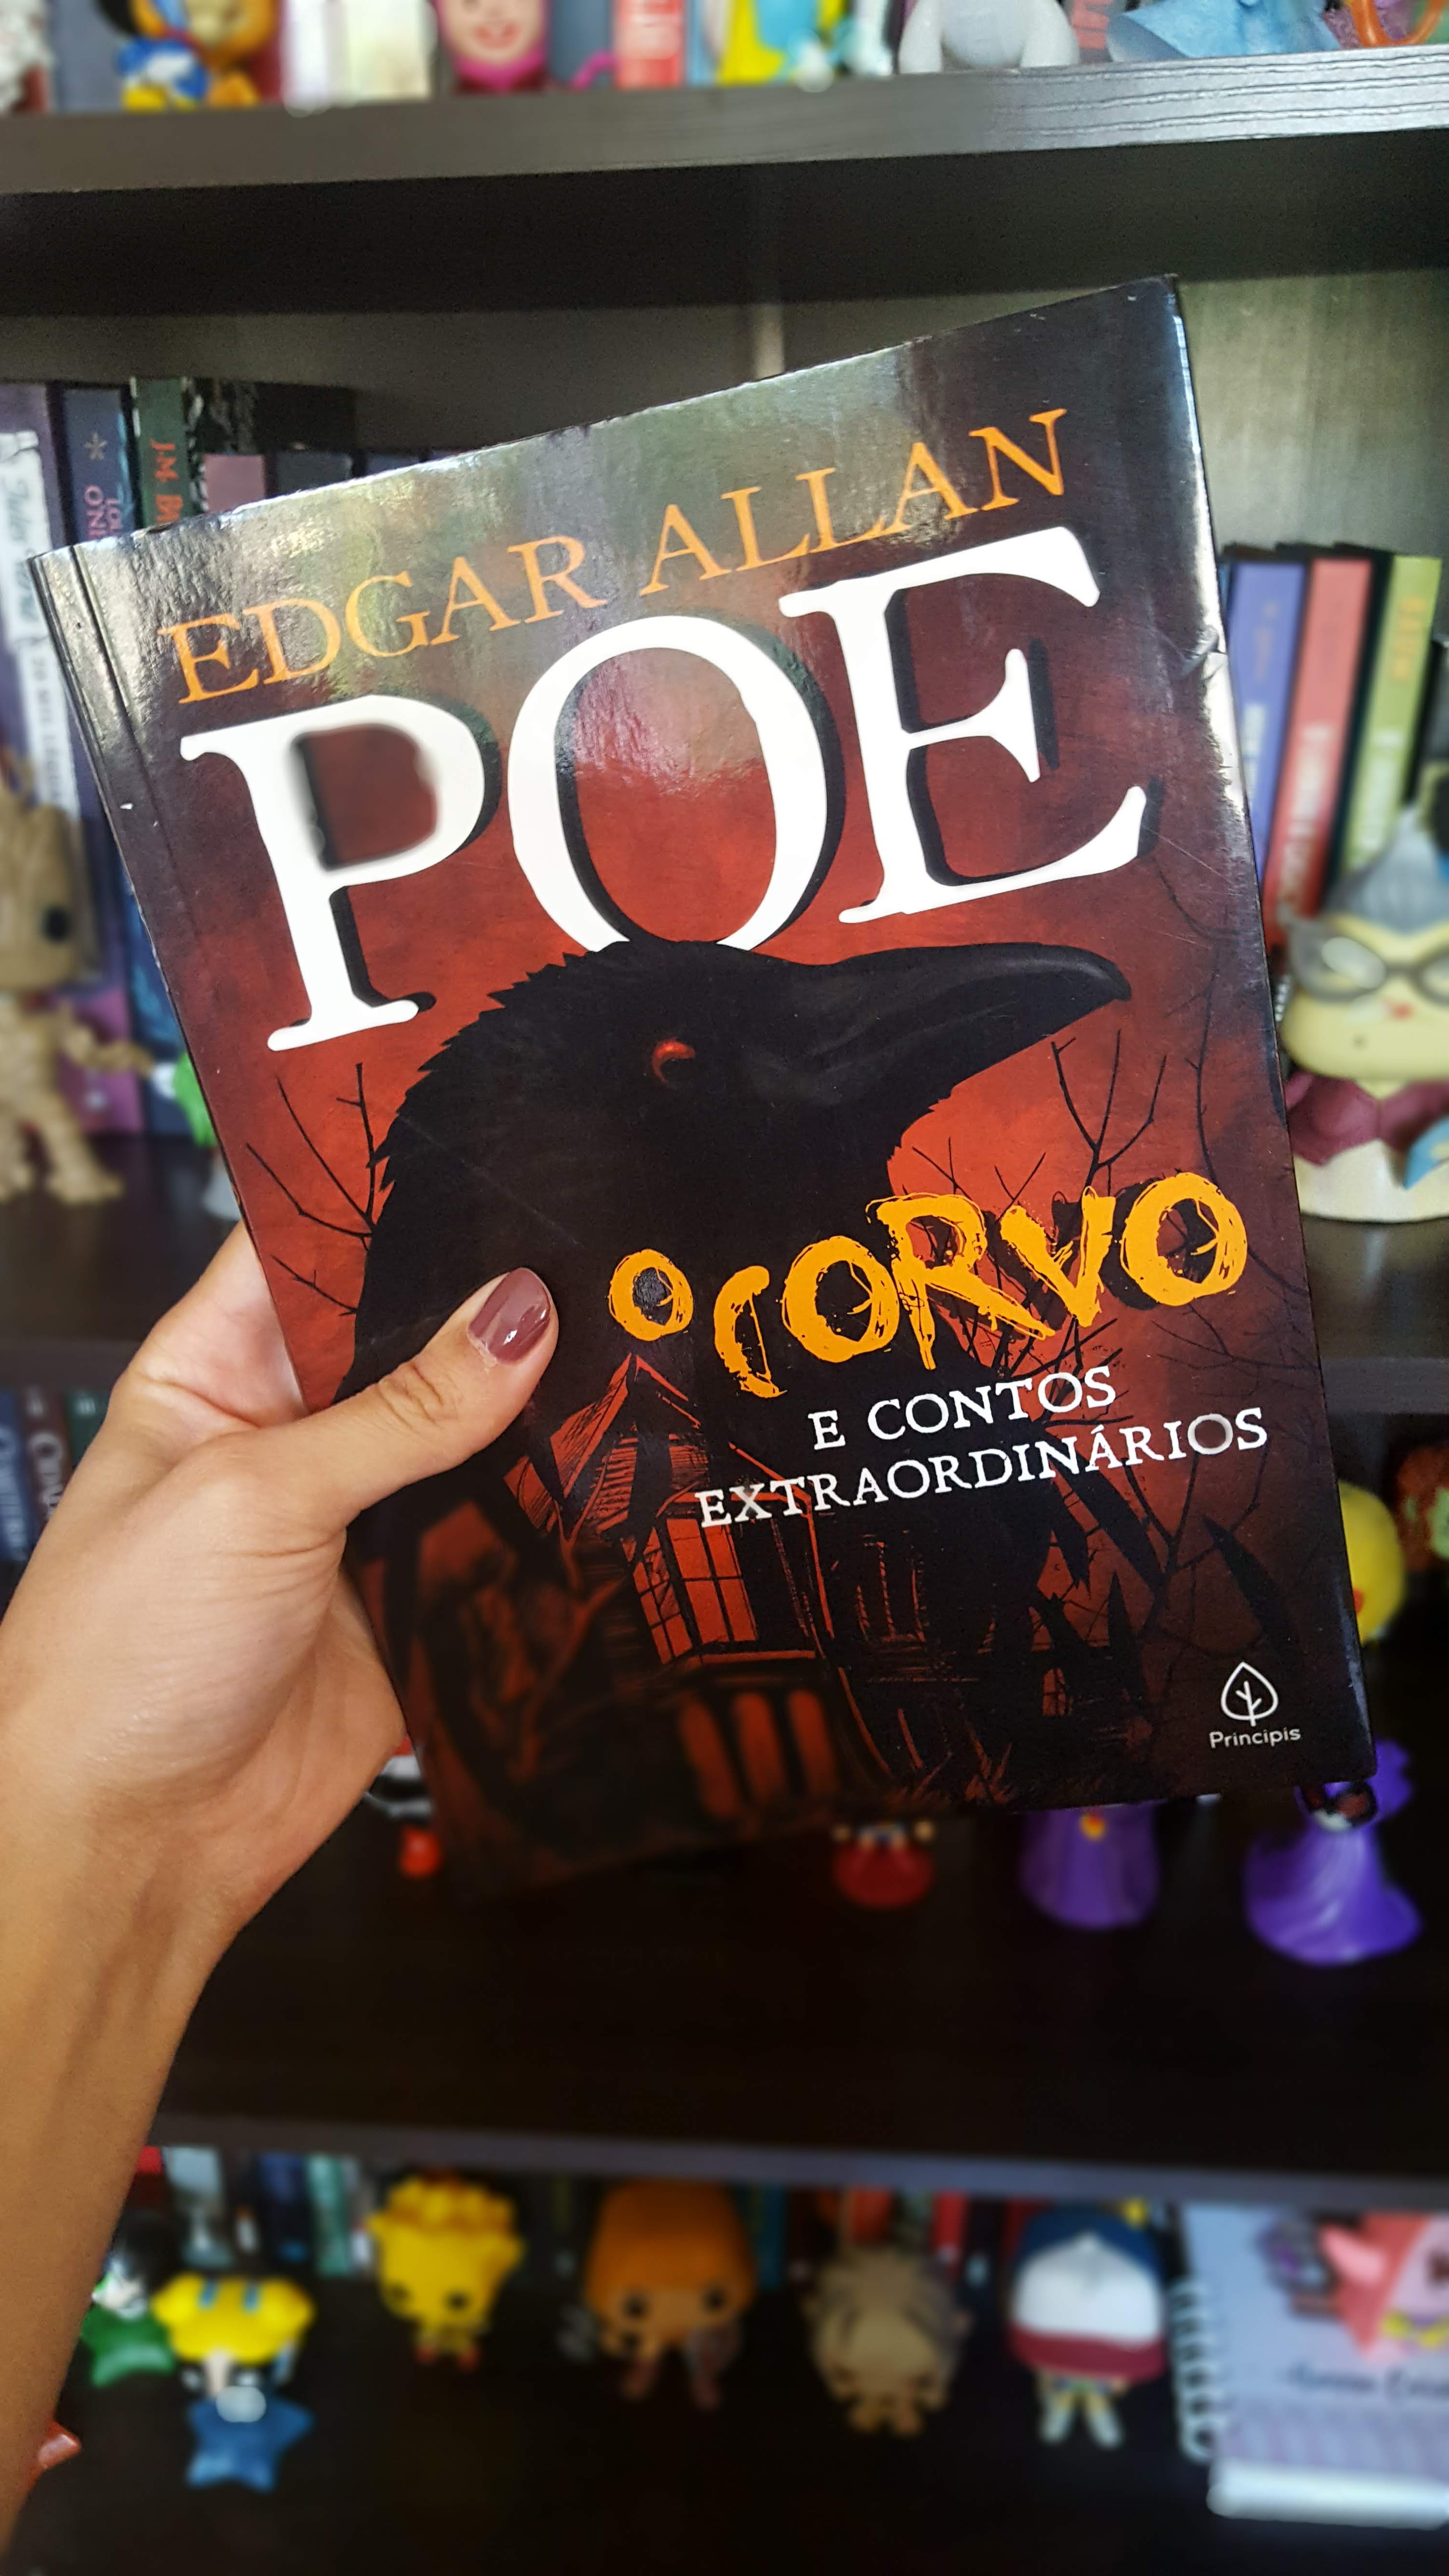 O corvo e contos extraordinários |Edgar Allan Poe